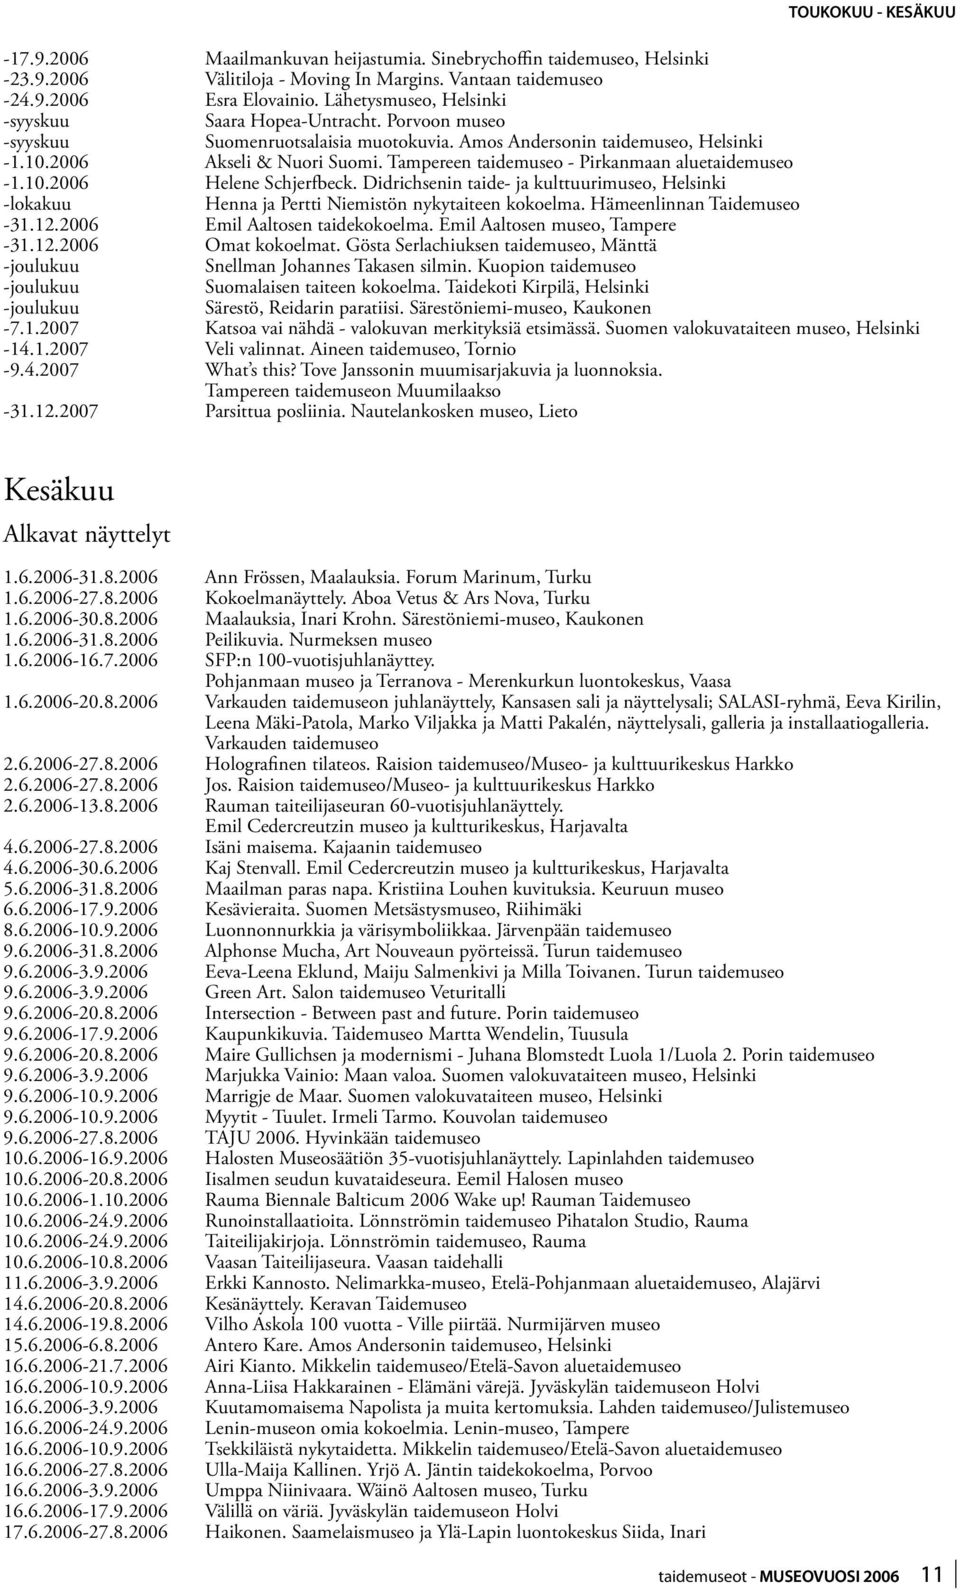 Tampereen taidemuseo - Pirkanmaan aluetaidemuseo -1.10.2006 Helene Schjerfbeck. Didrichsenin taide- ja kulttuurimuseo, Helsinki -lokakuu Henna ja Pertti Niemistön nykytaiteen kokoelma.